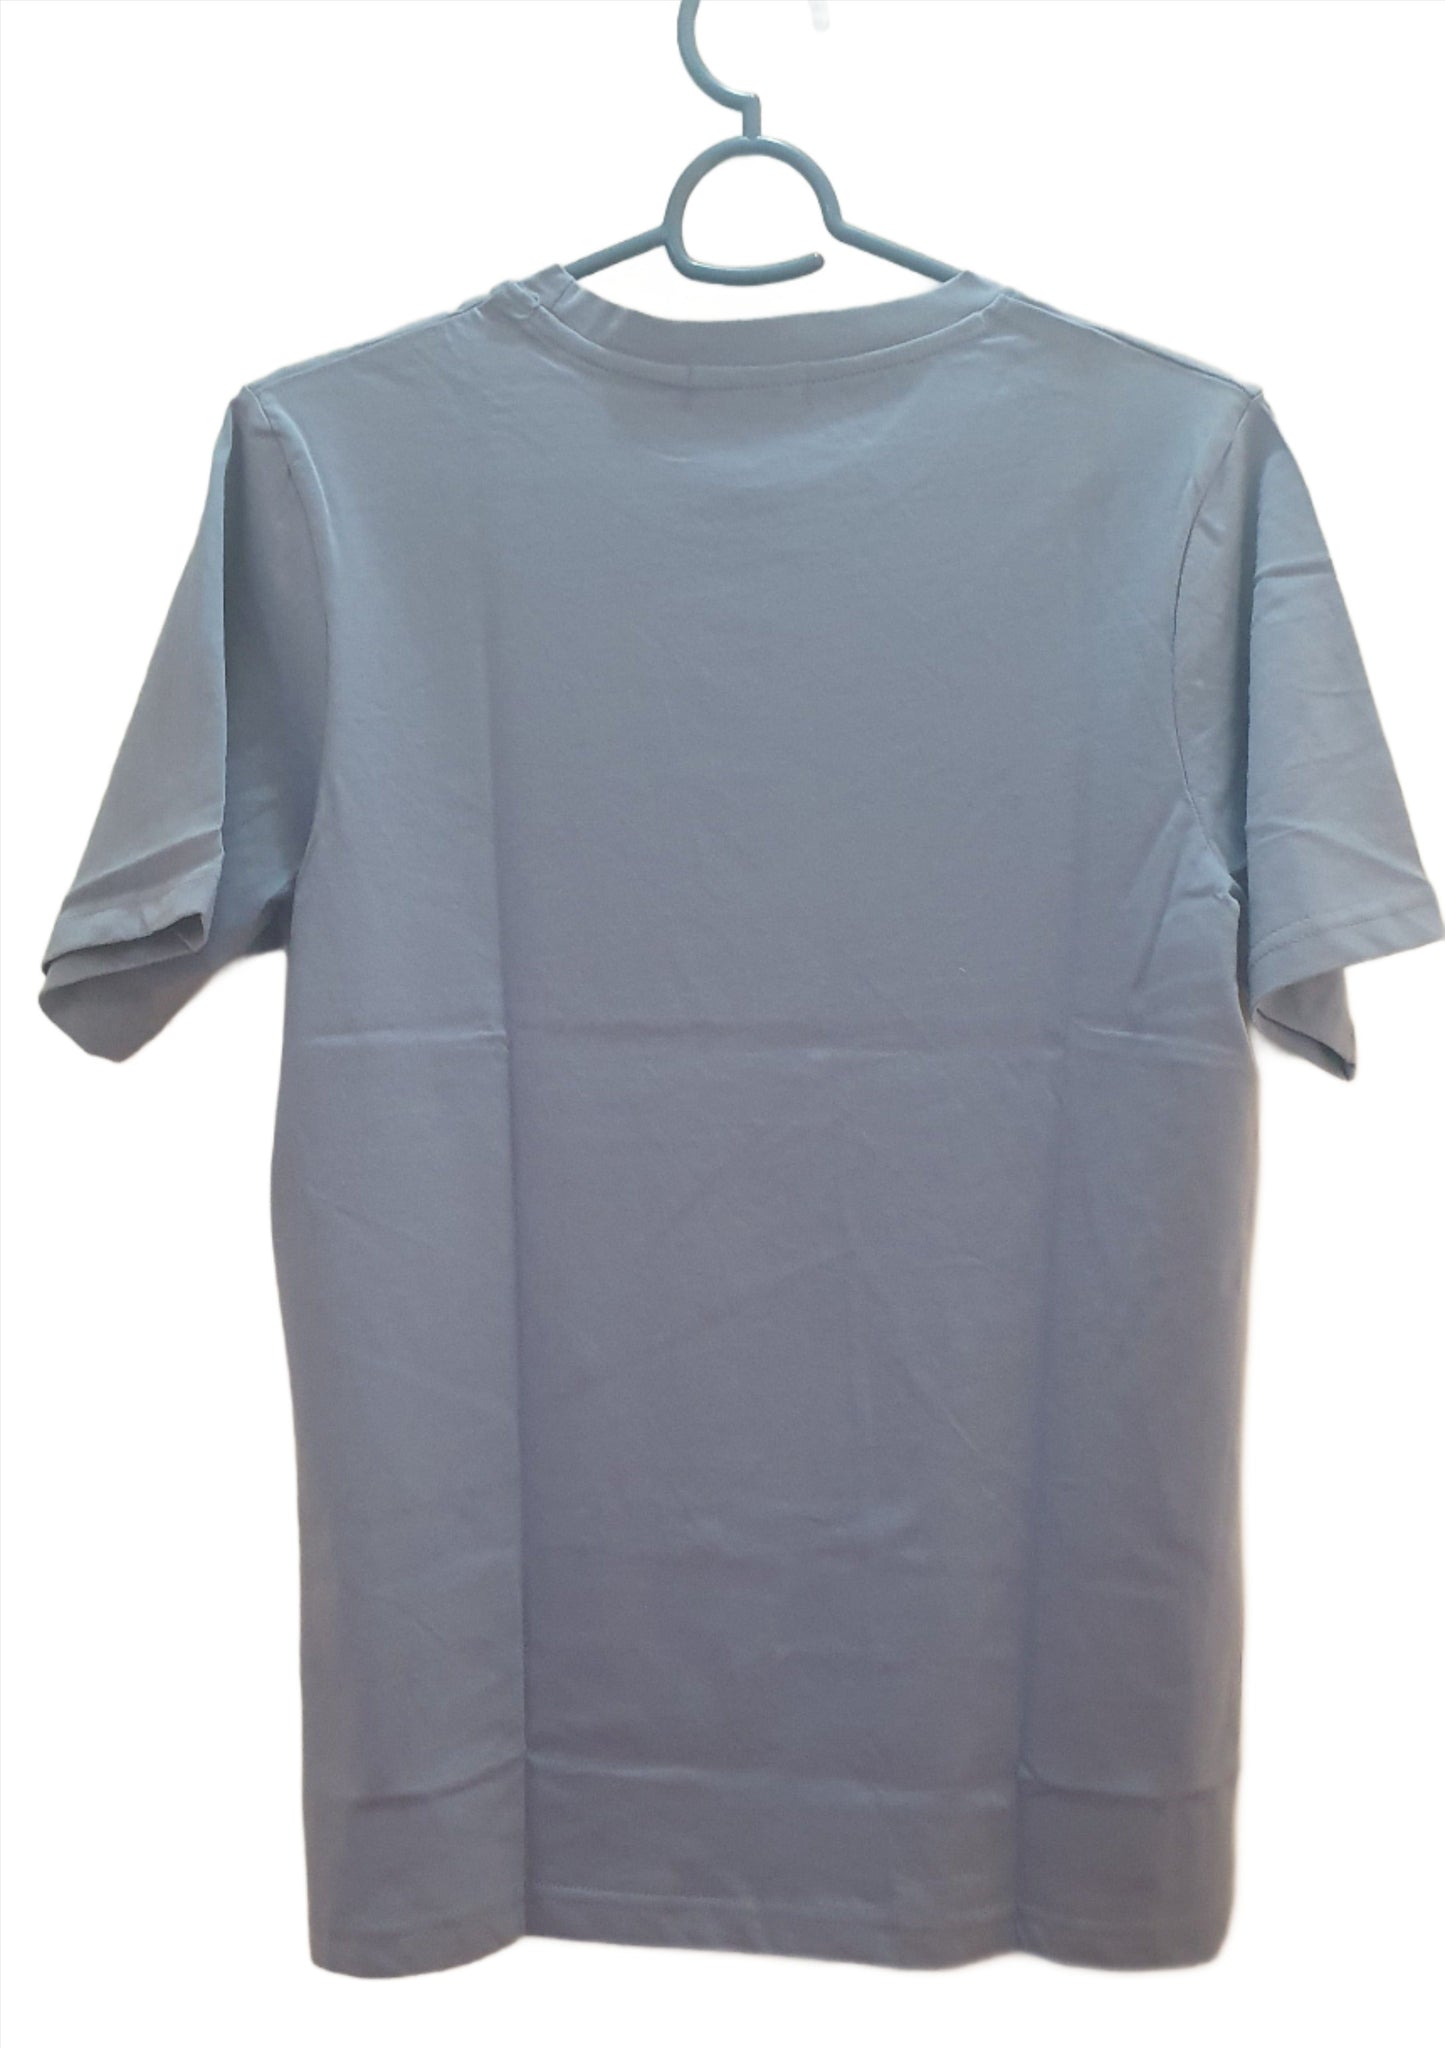 Light Blue Colour Cotton Tshirt